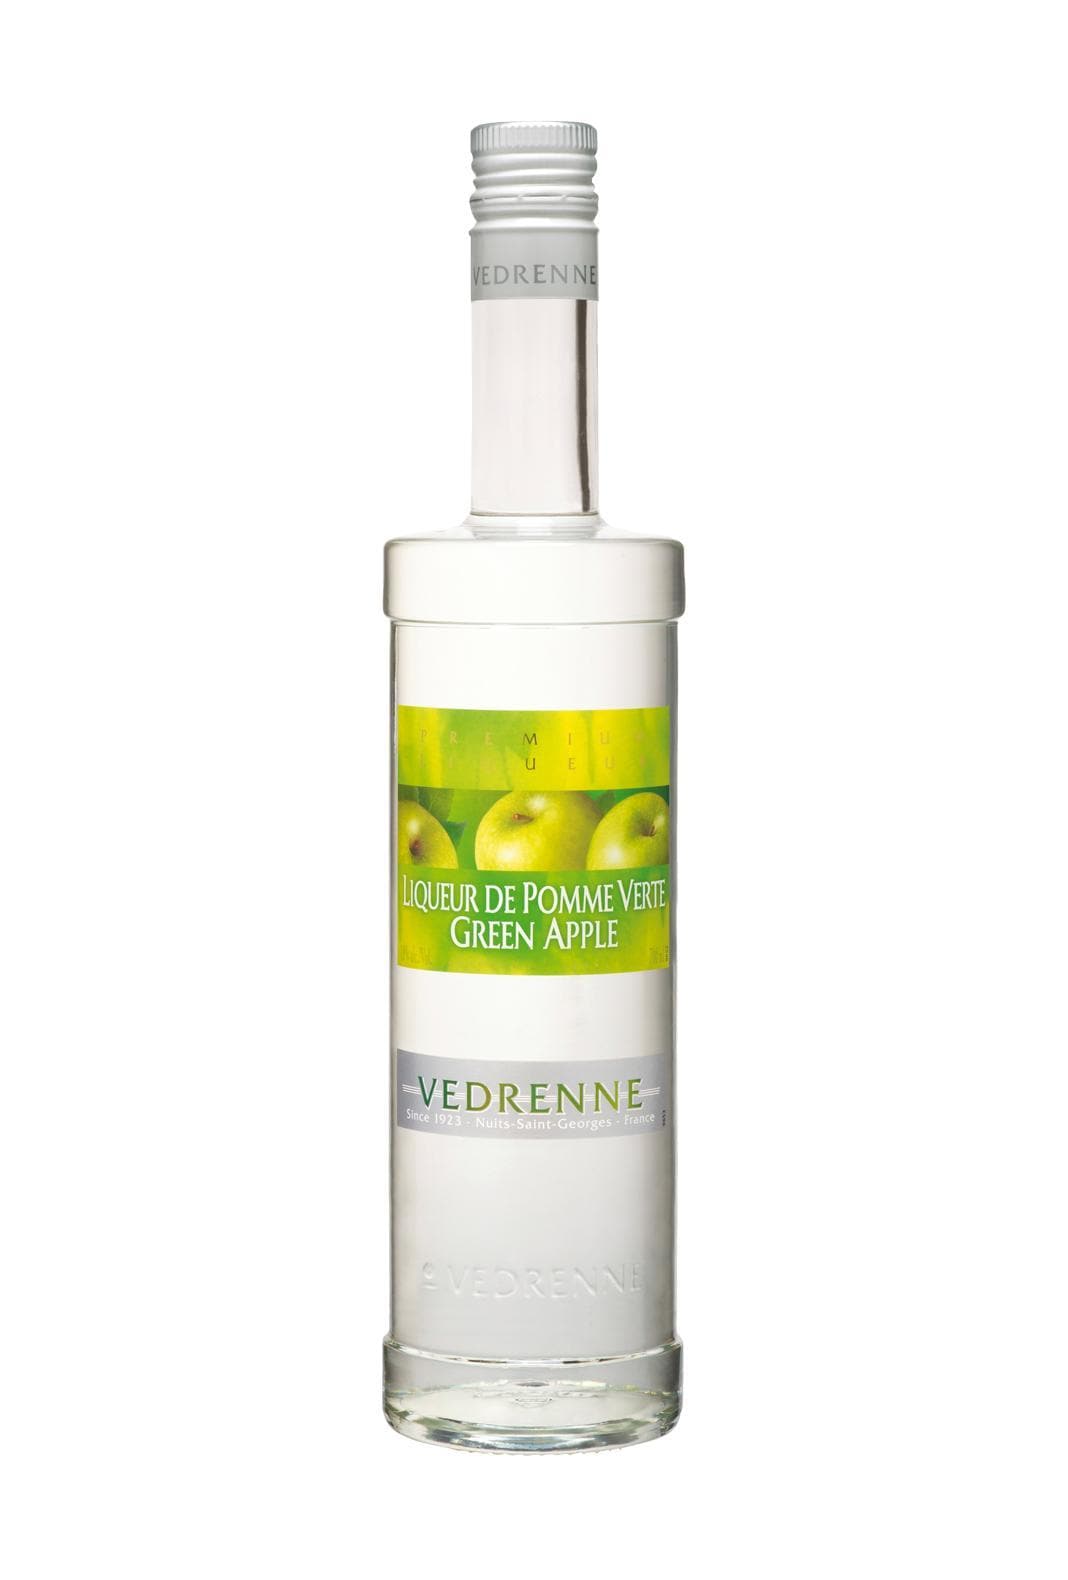 Vedrenne Liqueur de Pomme Verte (Green Apple) 18% 700ml | Liqueurs | Shop online at Spirits of France